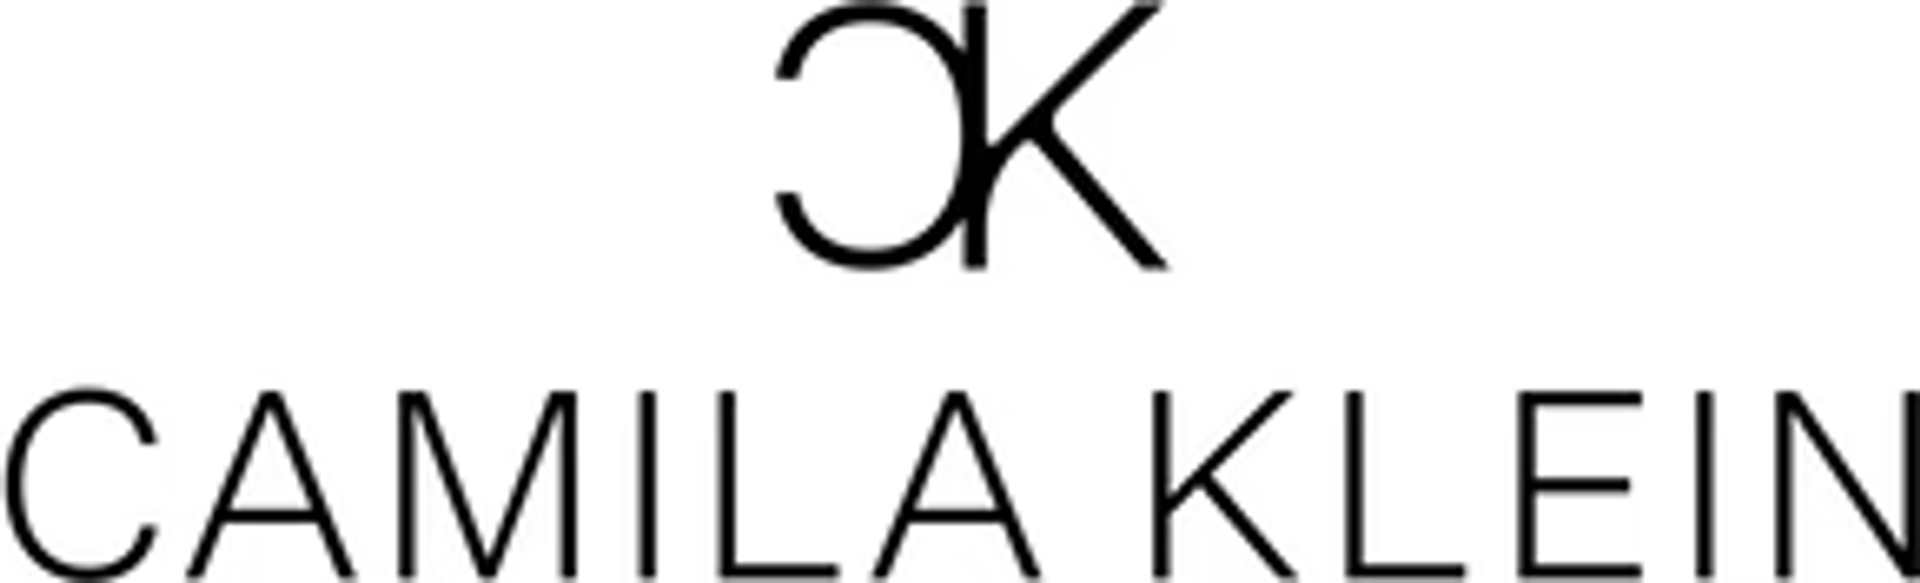 CAMILA KLEIN logo de catálogo